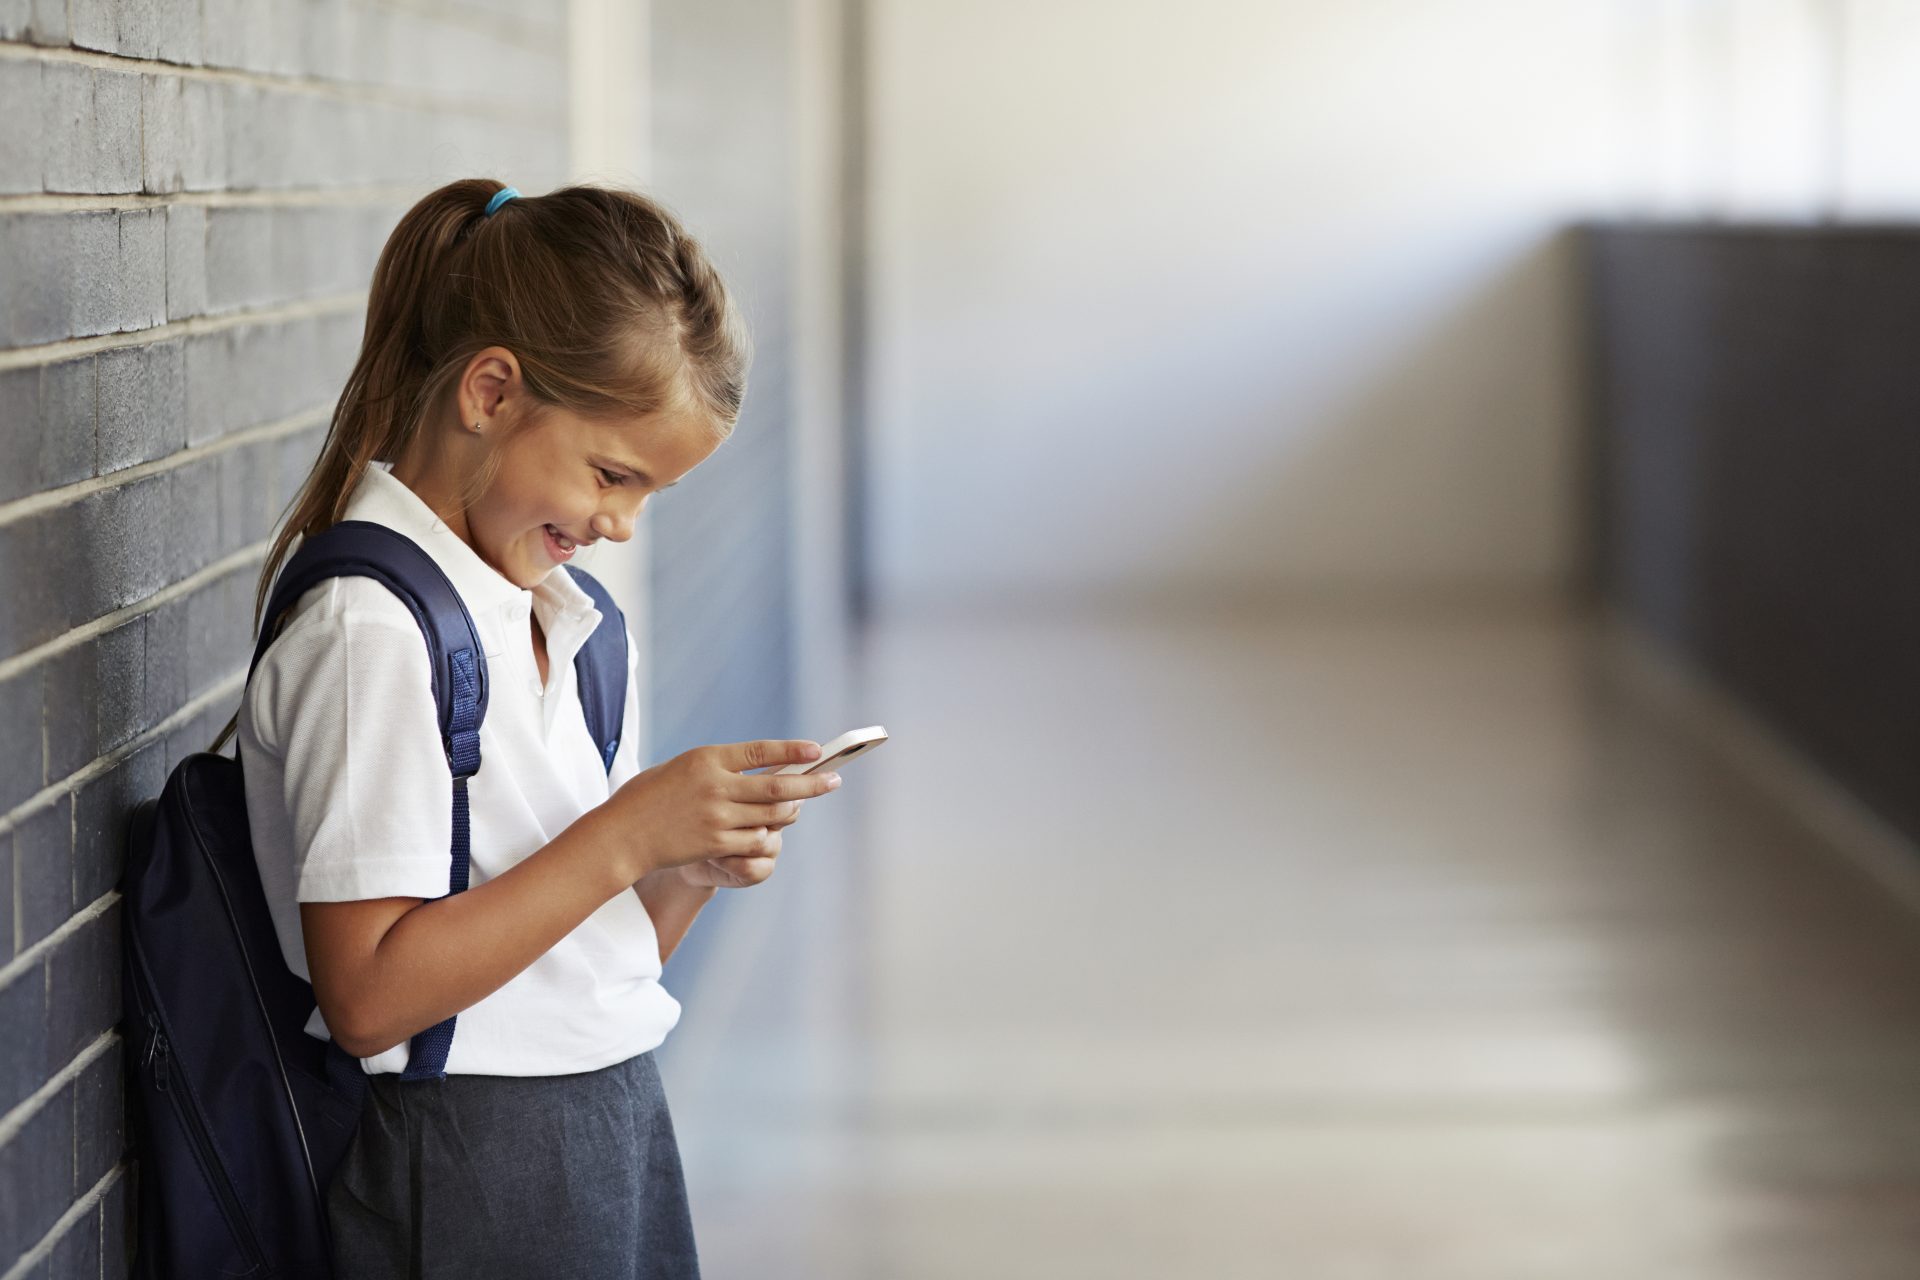 Los Angeles veut interdire les smartphones dans ses écoles